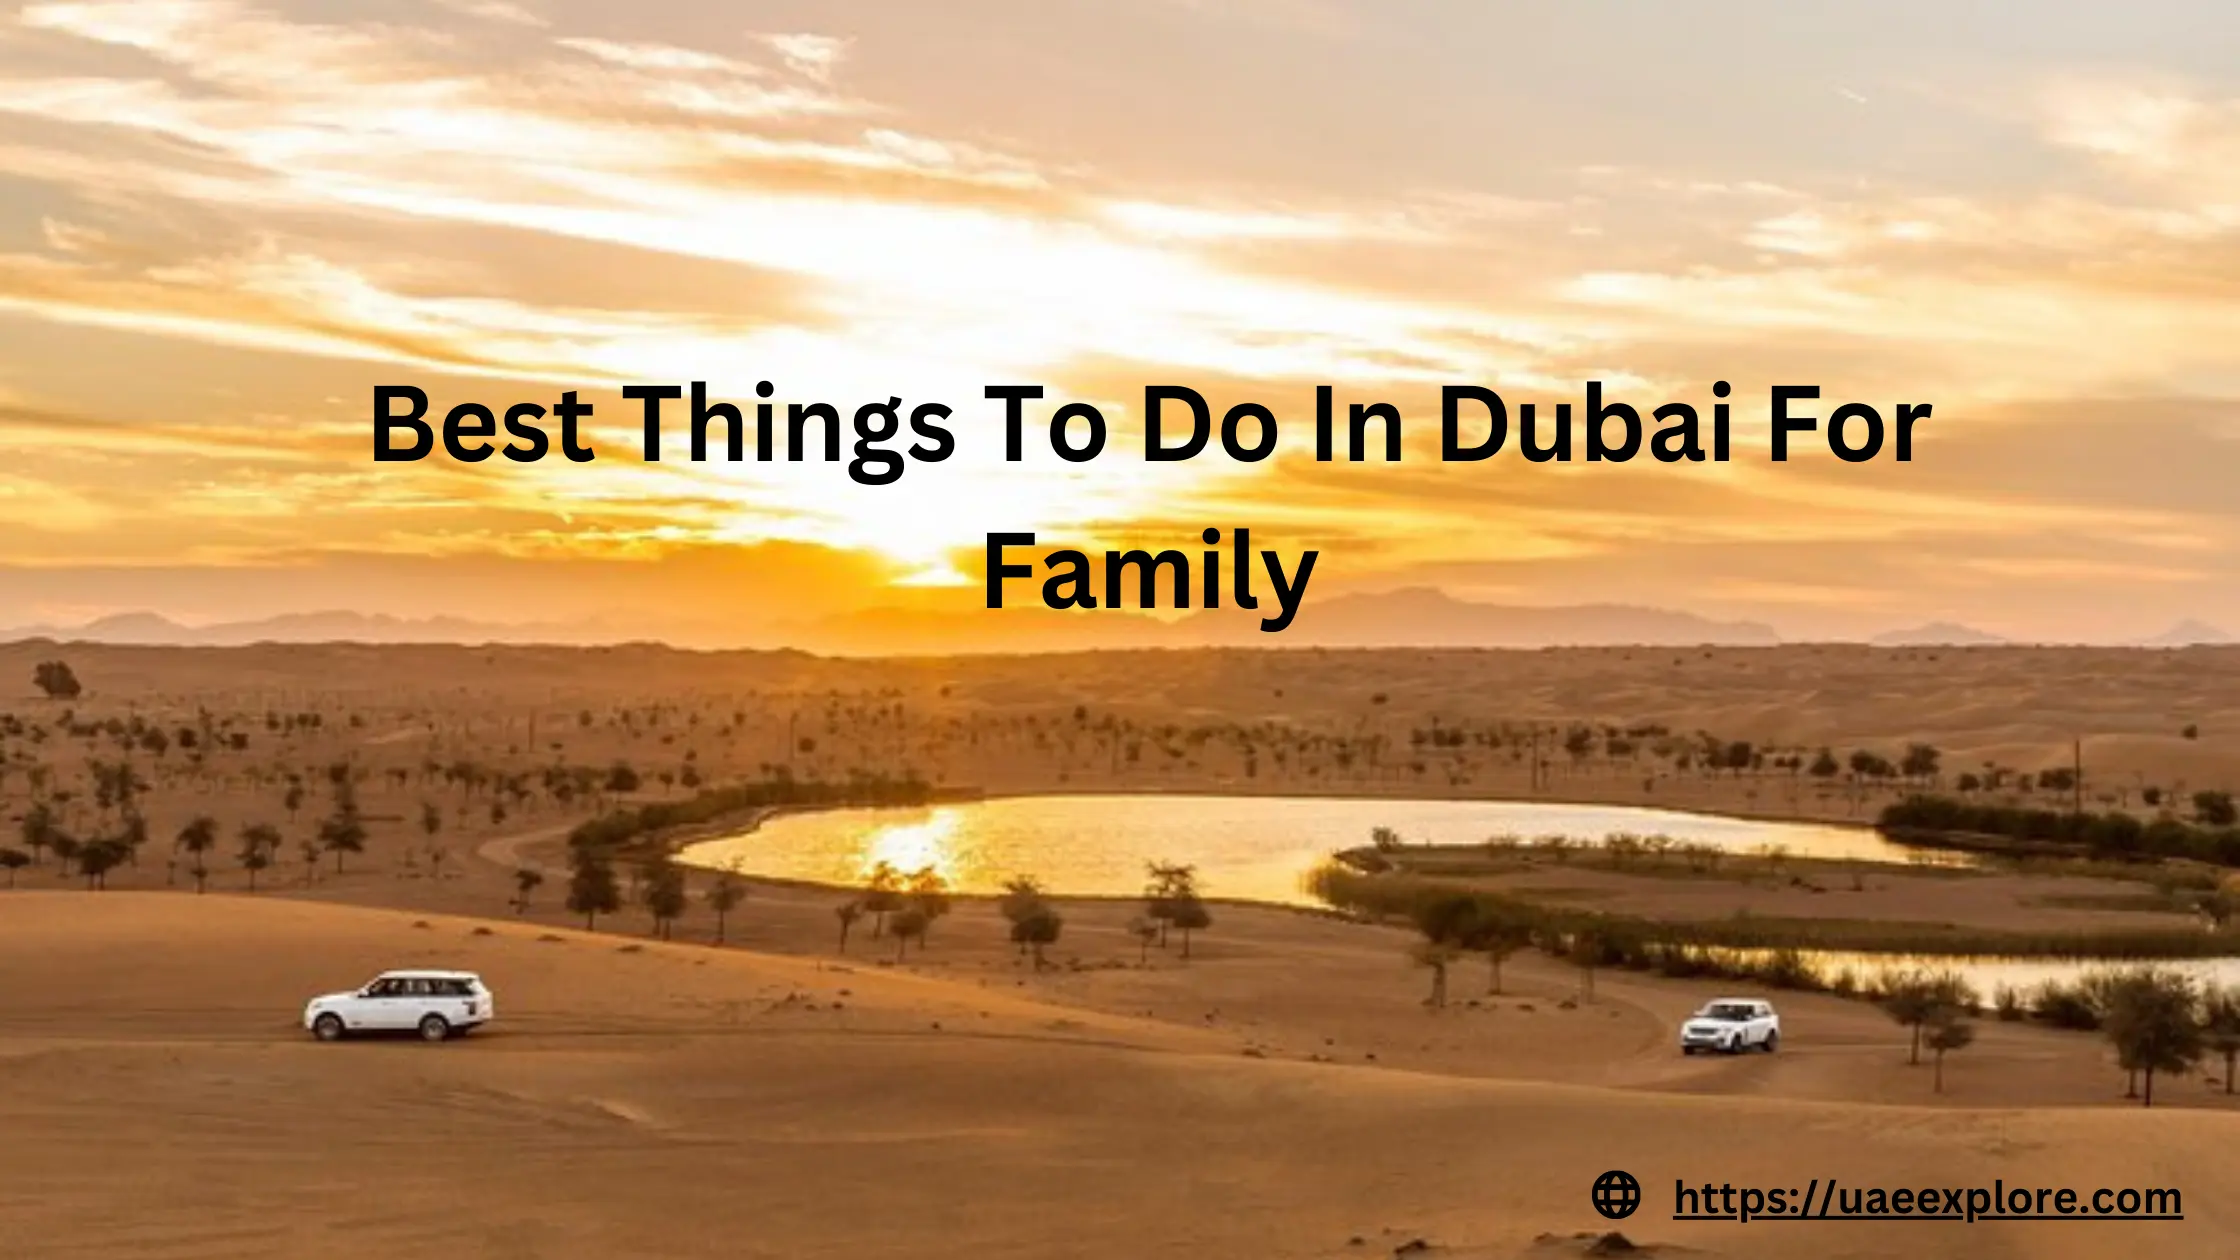 Family Fun In Dubai